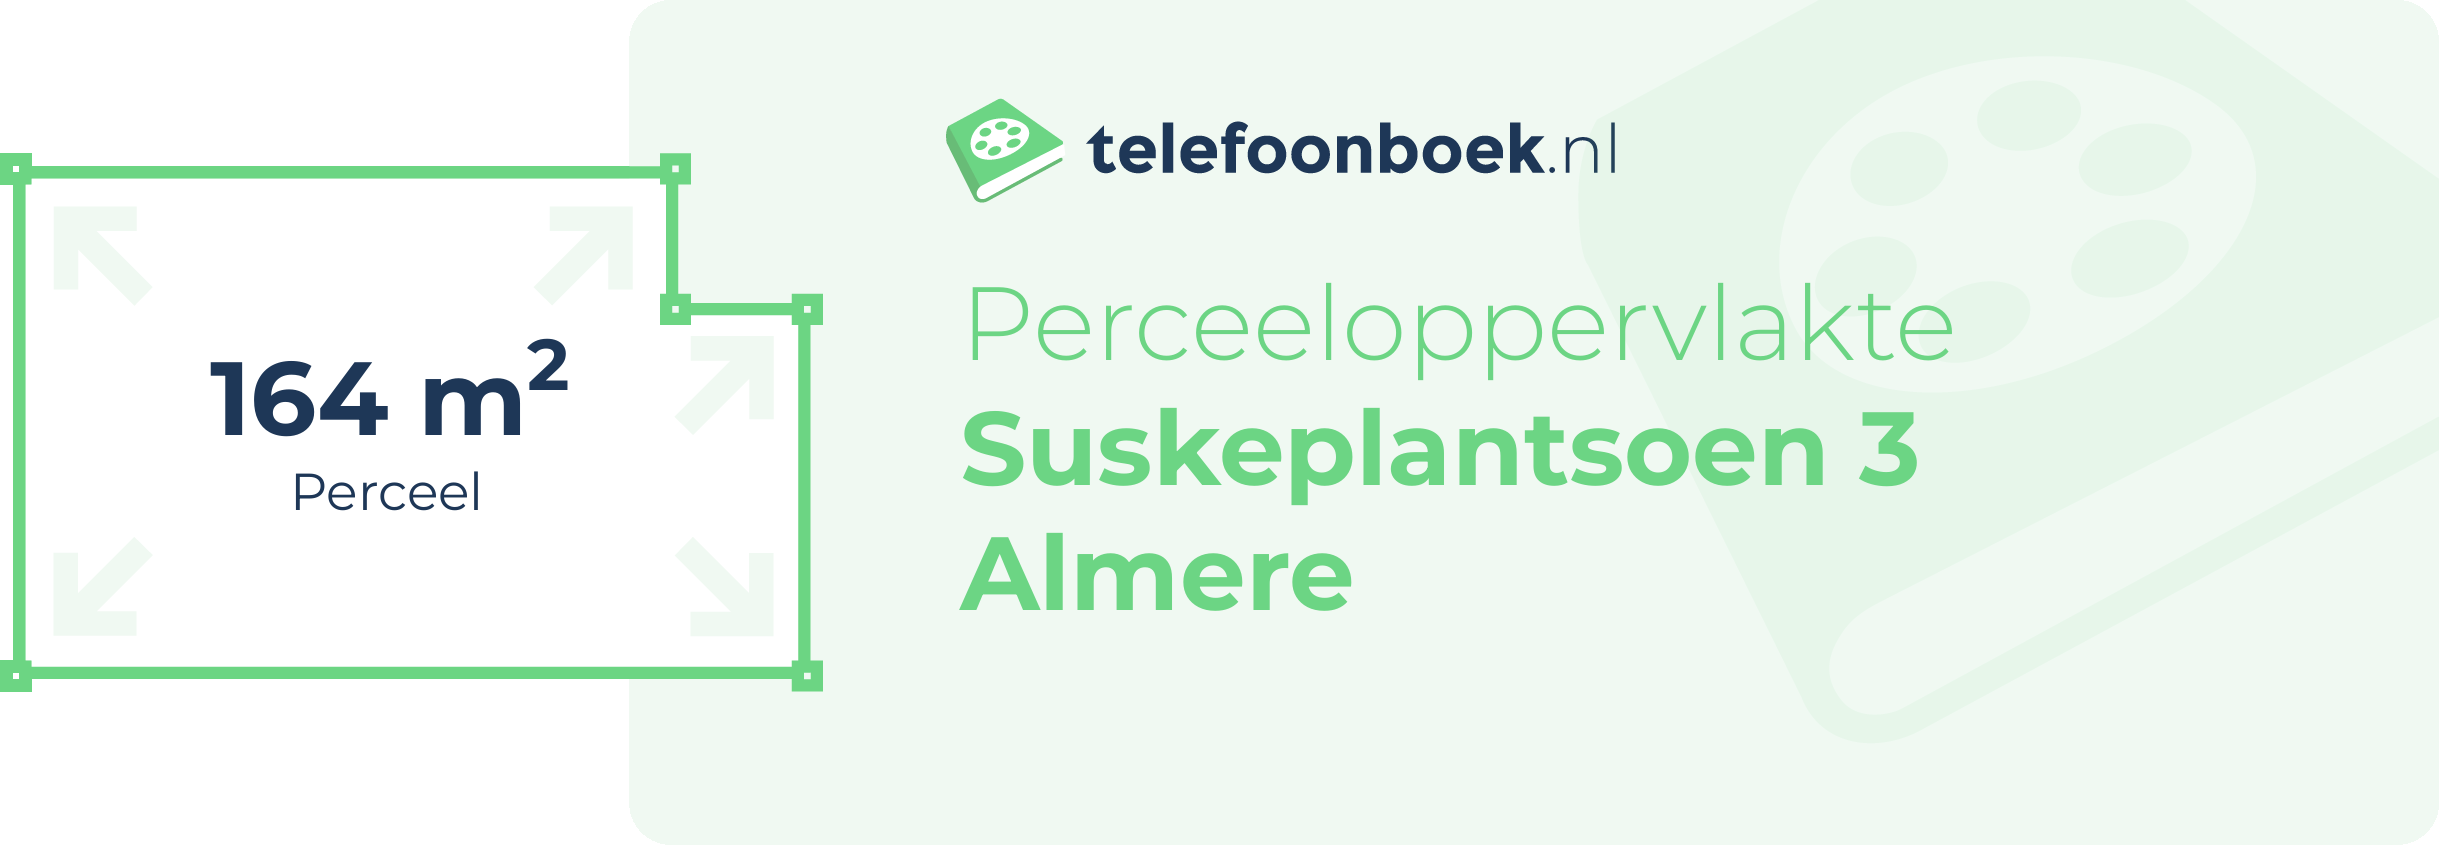 Perceeloppervlakte Suskeplantsoen 3 Almere